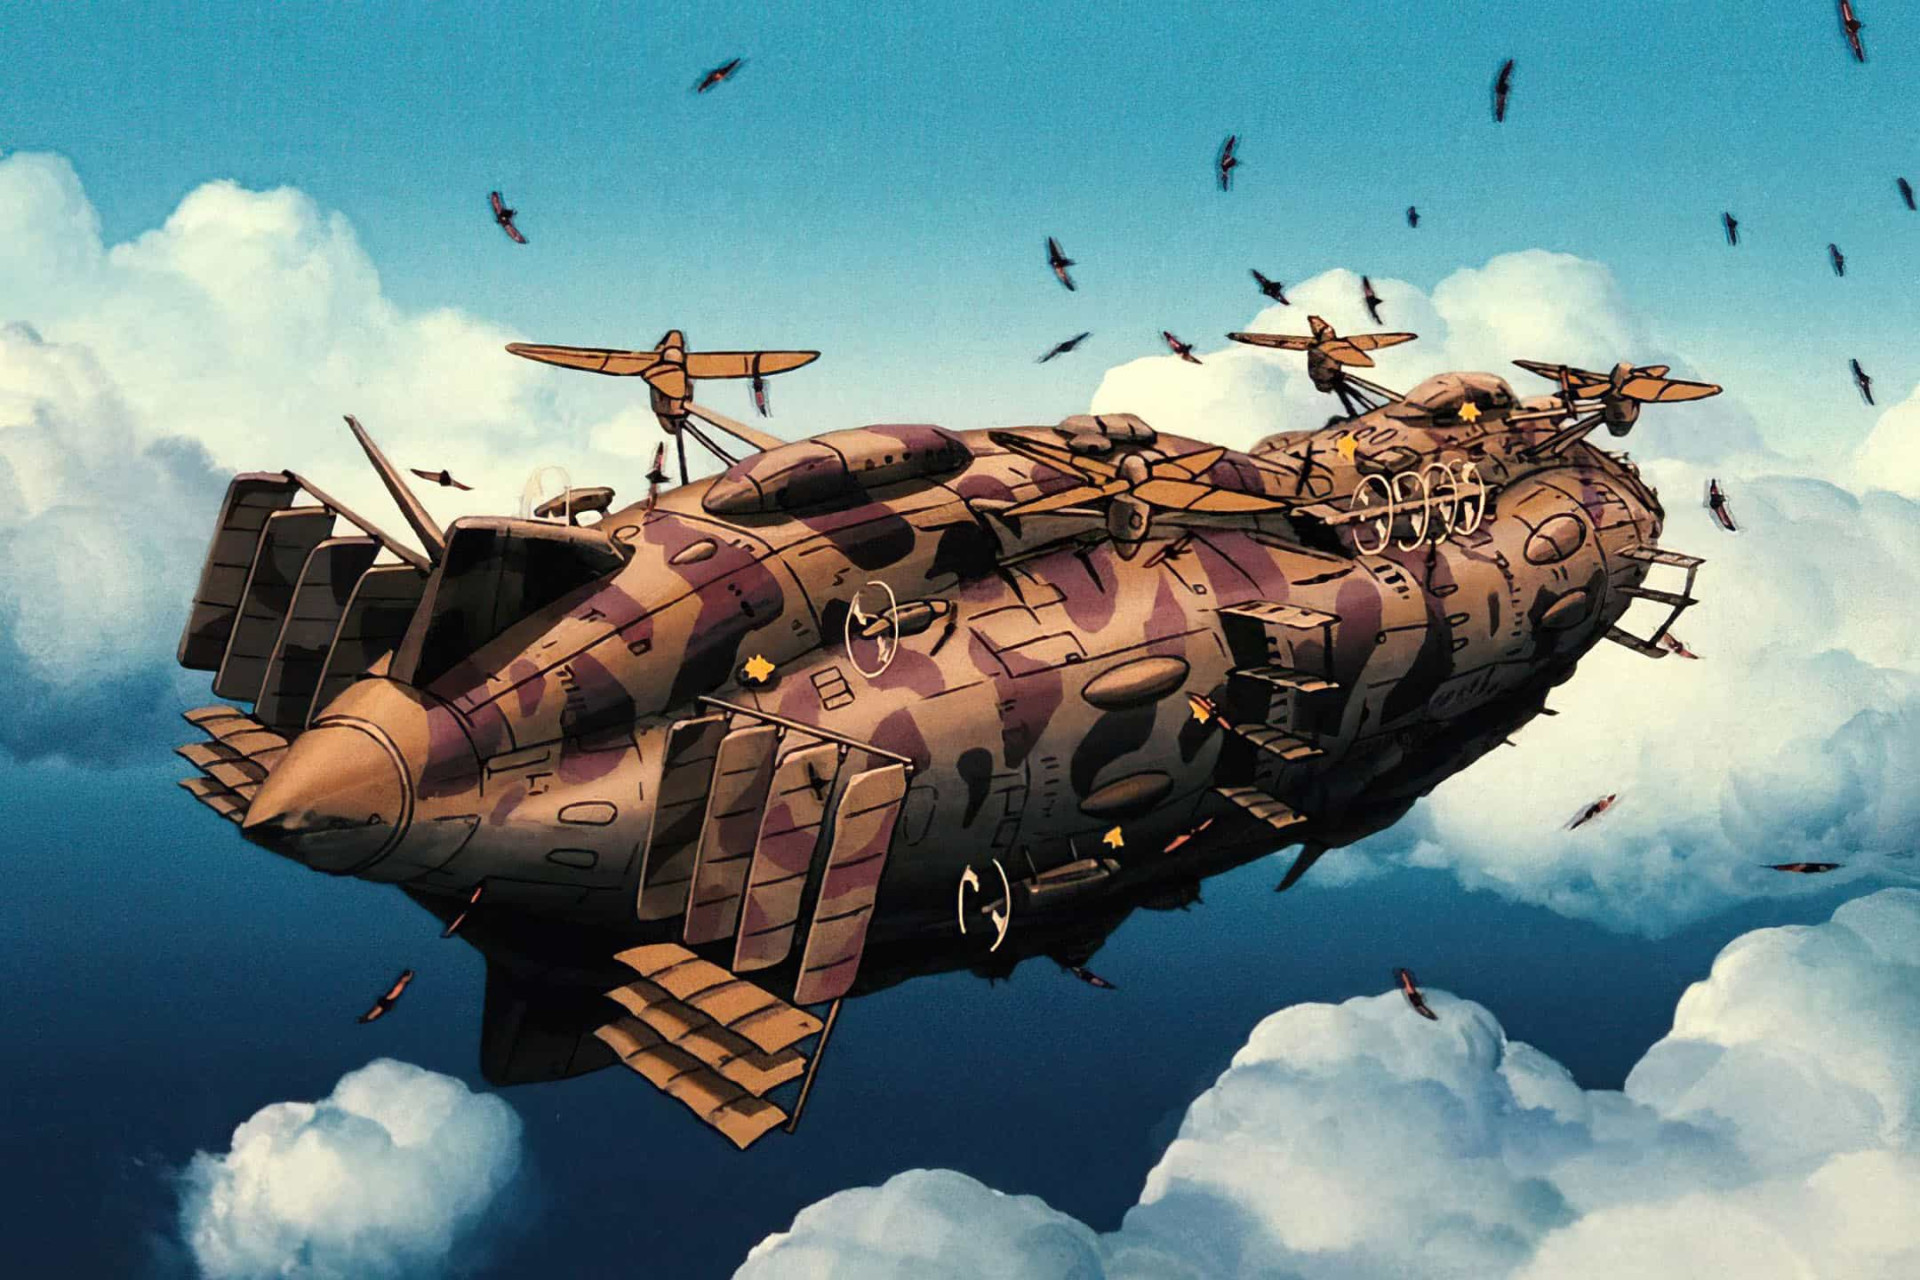 <p>Réalisé en 1986 par Hayao Miyzaki, "Le Château dans le ciel" est l'un des premiers films à avoir fait décoller le studio. Aujourd'hui, il est toujours considéré comme l'un des plus grands exploits dessiné à la main, et comme une œuvre phare du genre steampunk.</p><p><a href="https://www.msn.com/fr-fr/community/channel/vid-7xx8mnucu55yw63we9va2gwr7uihbxwc68fxqp25x6tg4ftibpra?cvid=94631541bc0f4f89bfd59158d696ad7e">Suivez-nous et accédez tous les jours à du contenu exclusif</a></p>